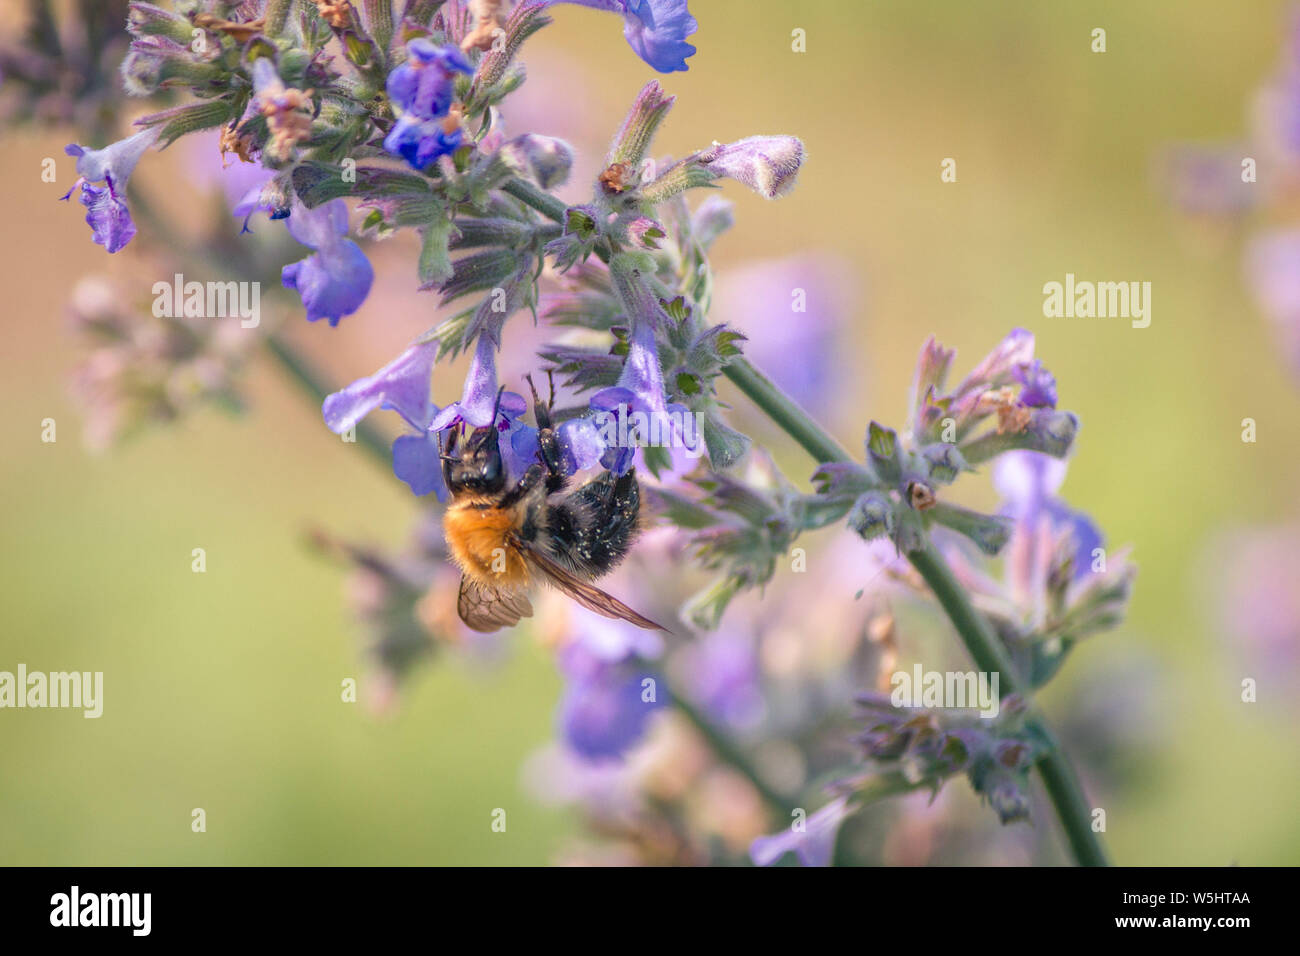 Hummel un lila Pflanze Katzenminze / Bumblebee sul fiore viola nepitella Foto Stock